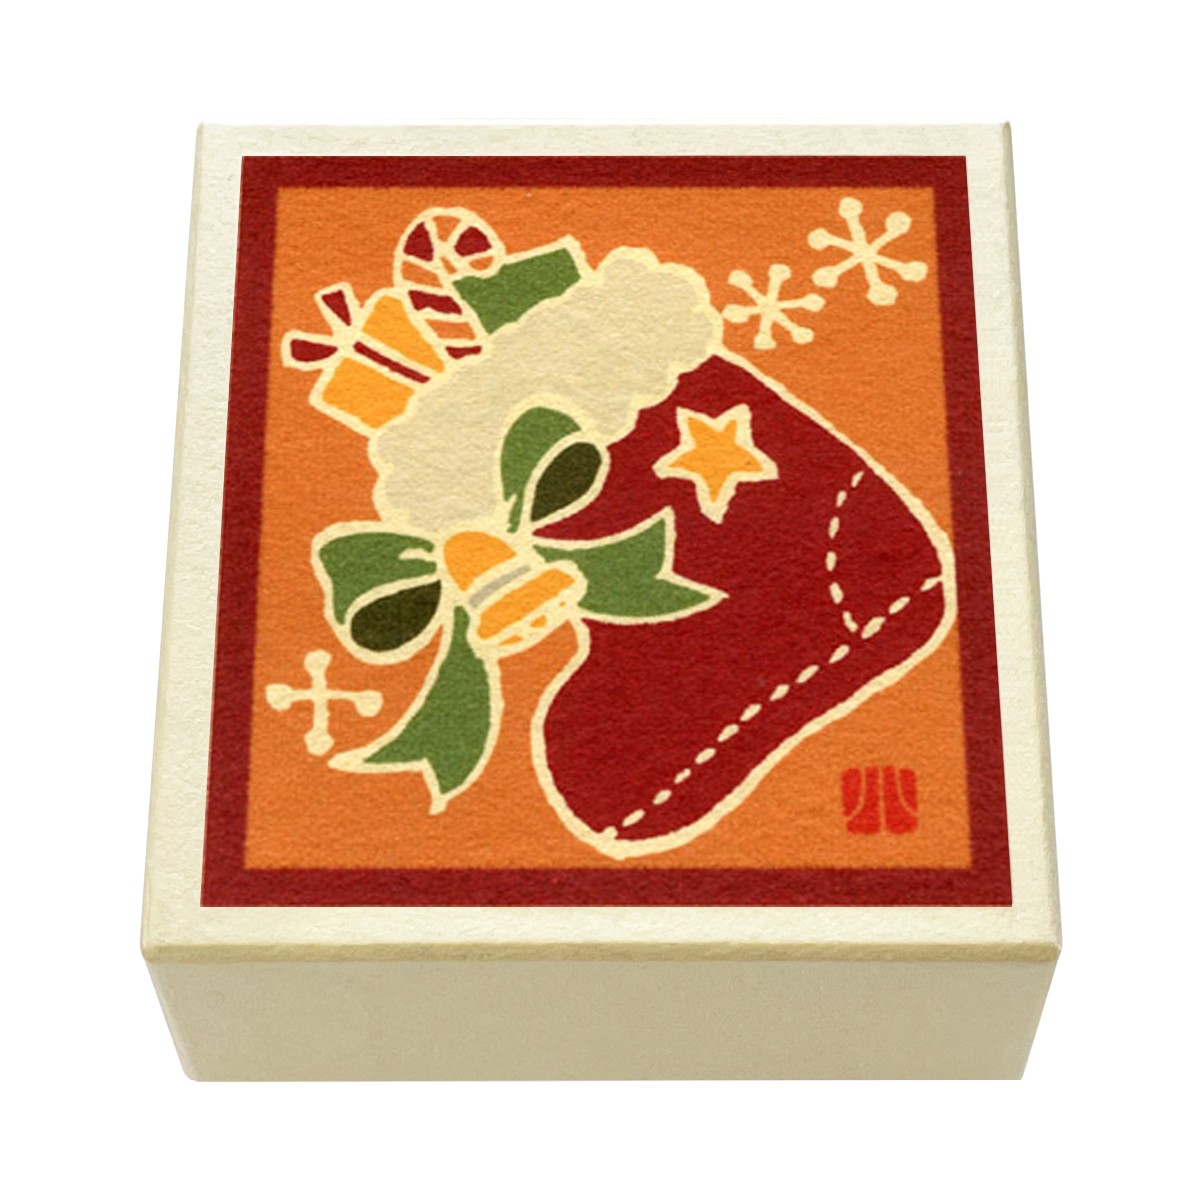 版画紙箱 おはこ 季節のおはこ 師走 クリスマス 小泉タツジ ブーツに詰めて